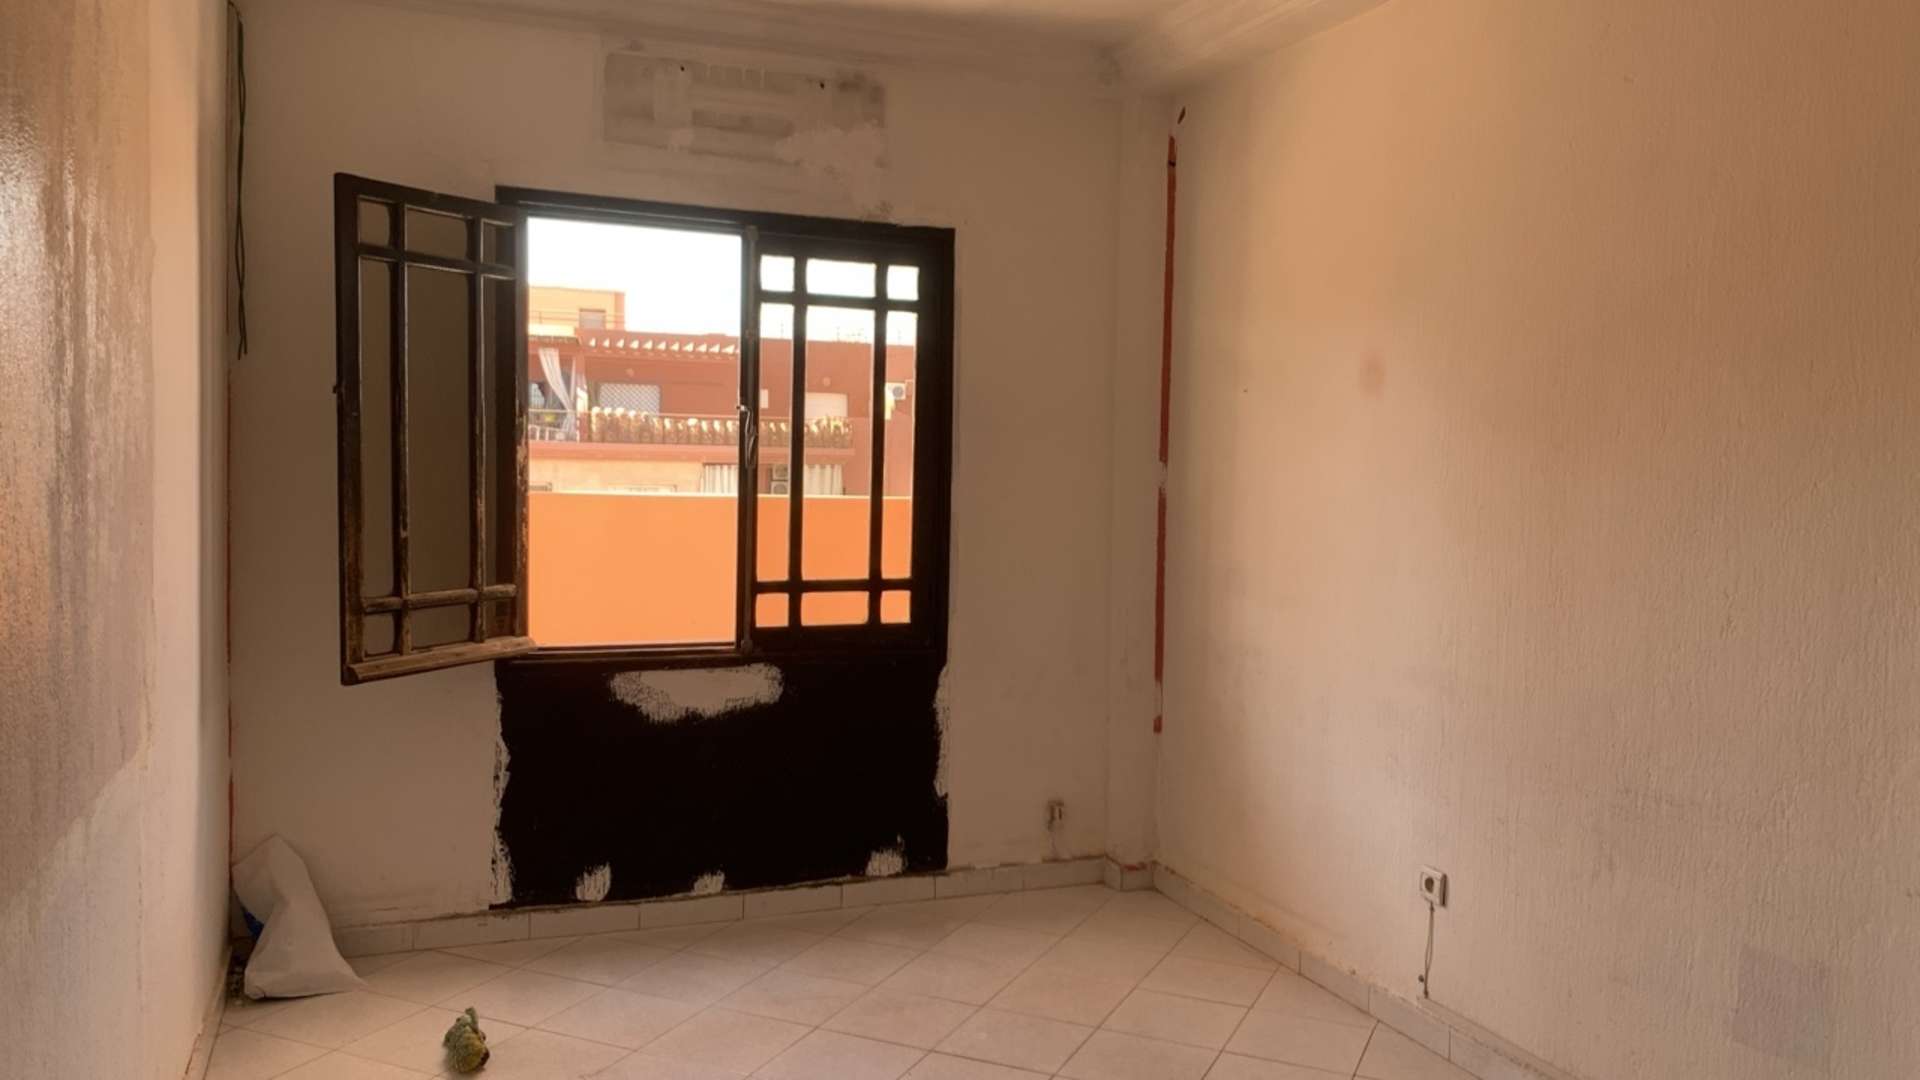 Location longue durée ,Bureaux & Commerces,Beaux bureaux à louer à Marrakech. Surface de 90.0 m². Concierge et climatisation,Marrakech,Guéliz